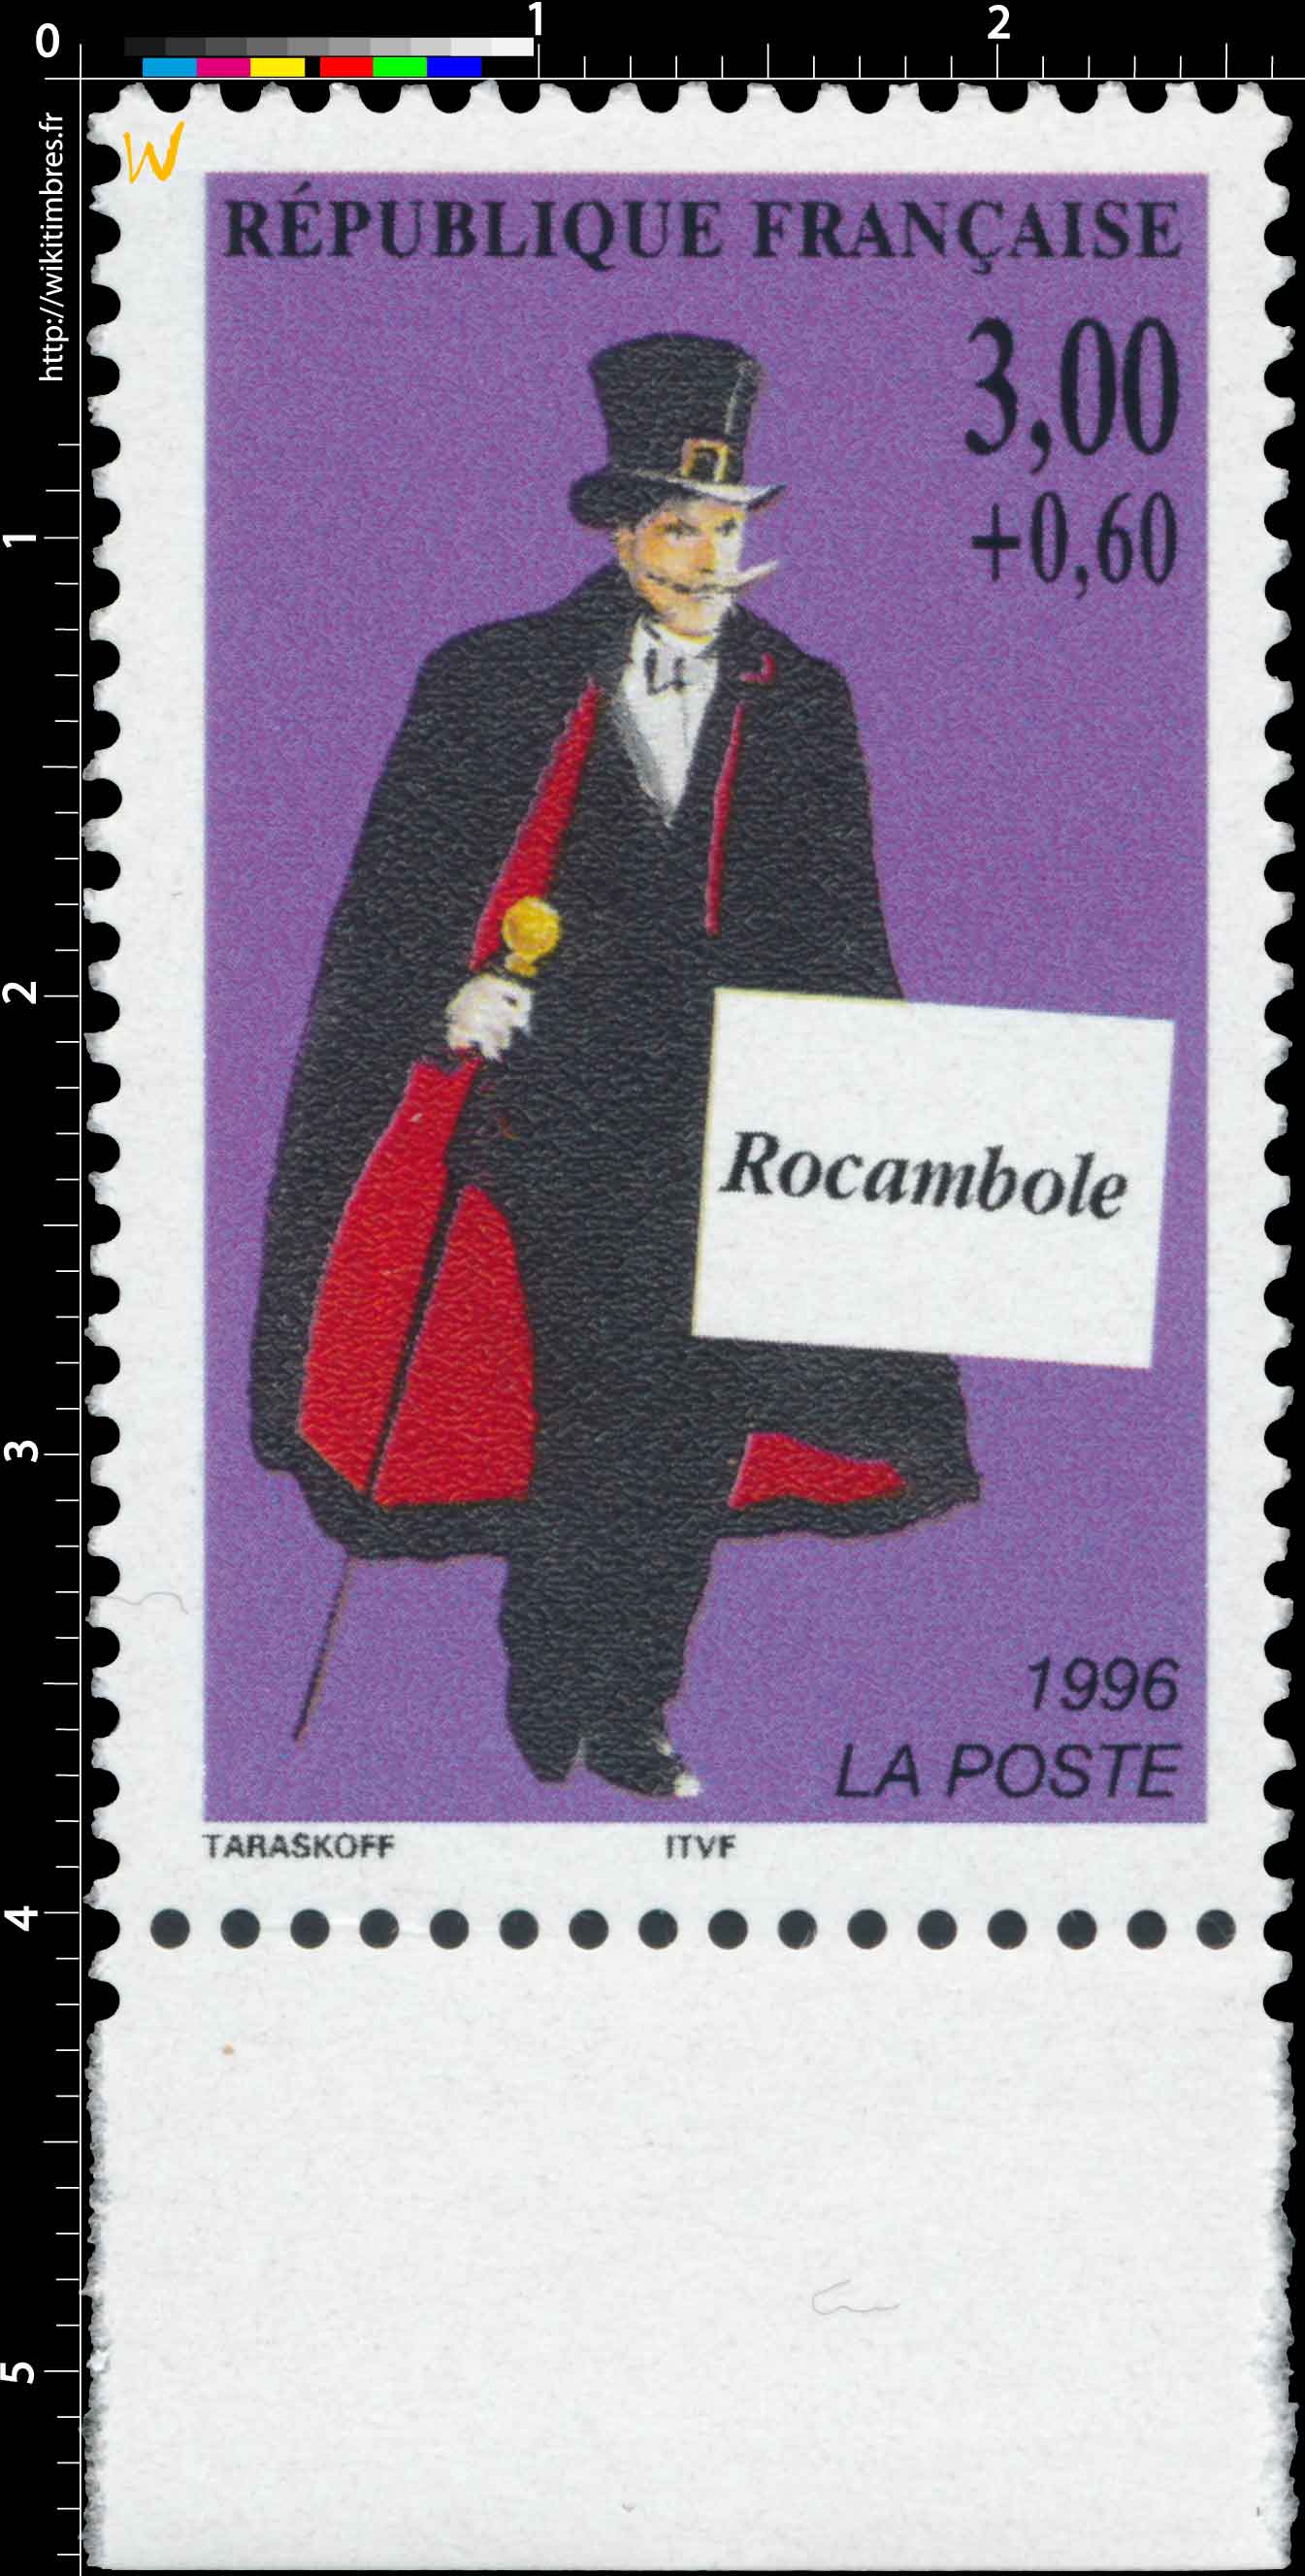 1996 Rocambole